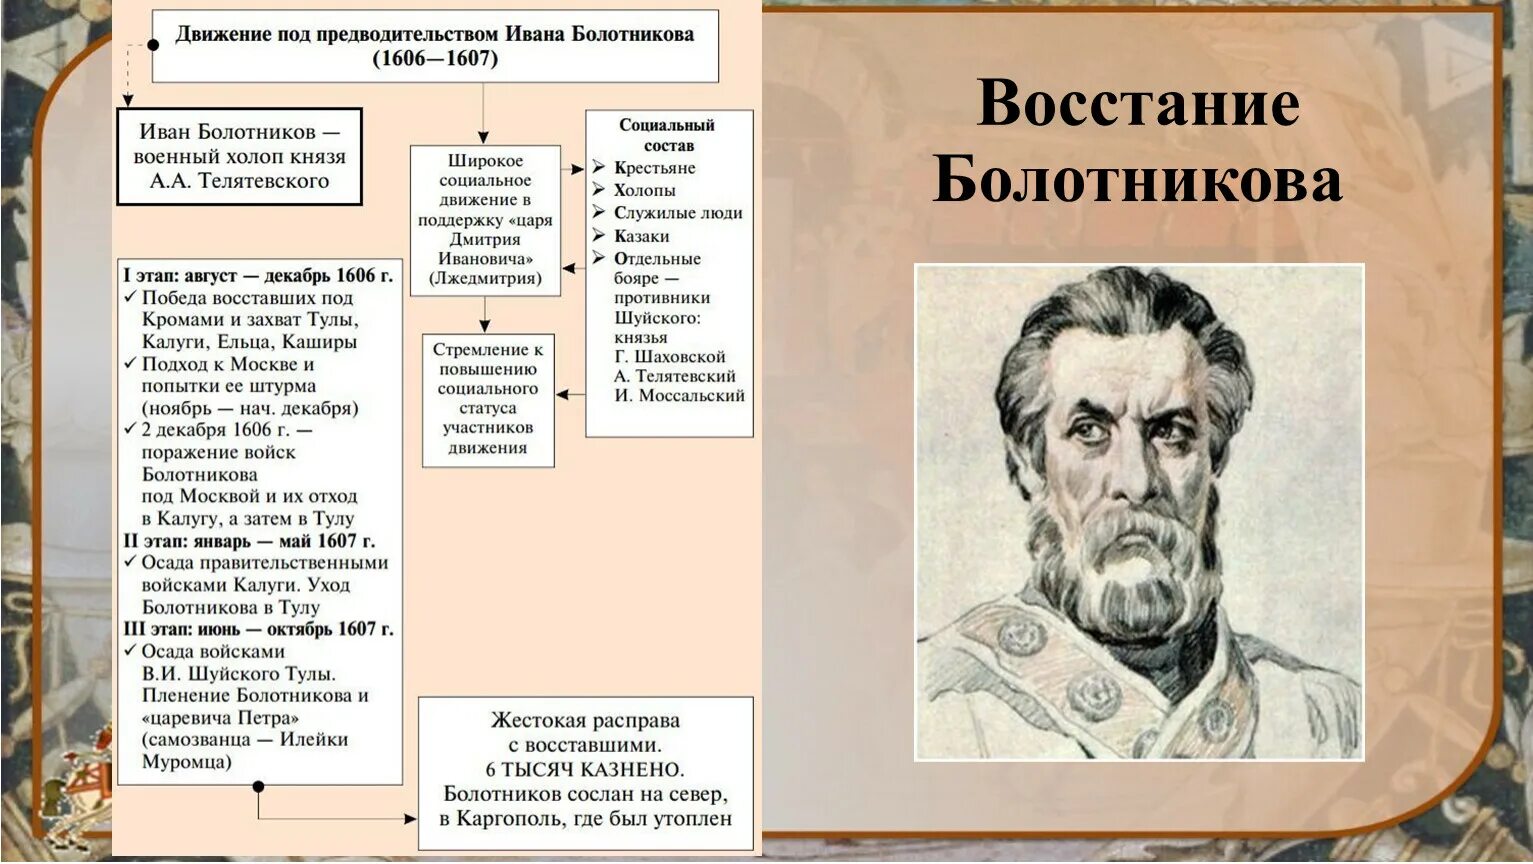 1606-1607 Восстание Ивана Болотникова. Движение под предводительством Ивана Болотникова 1606 1607.